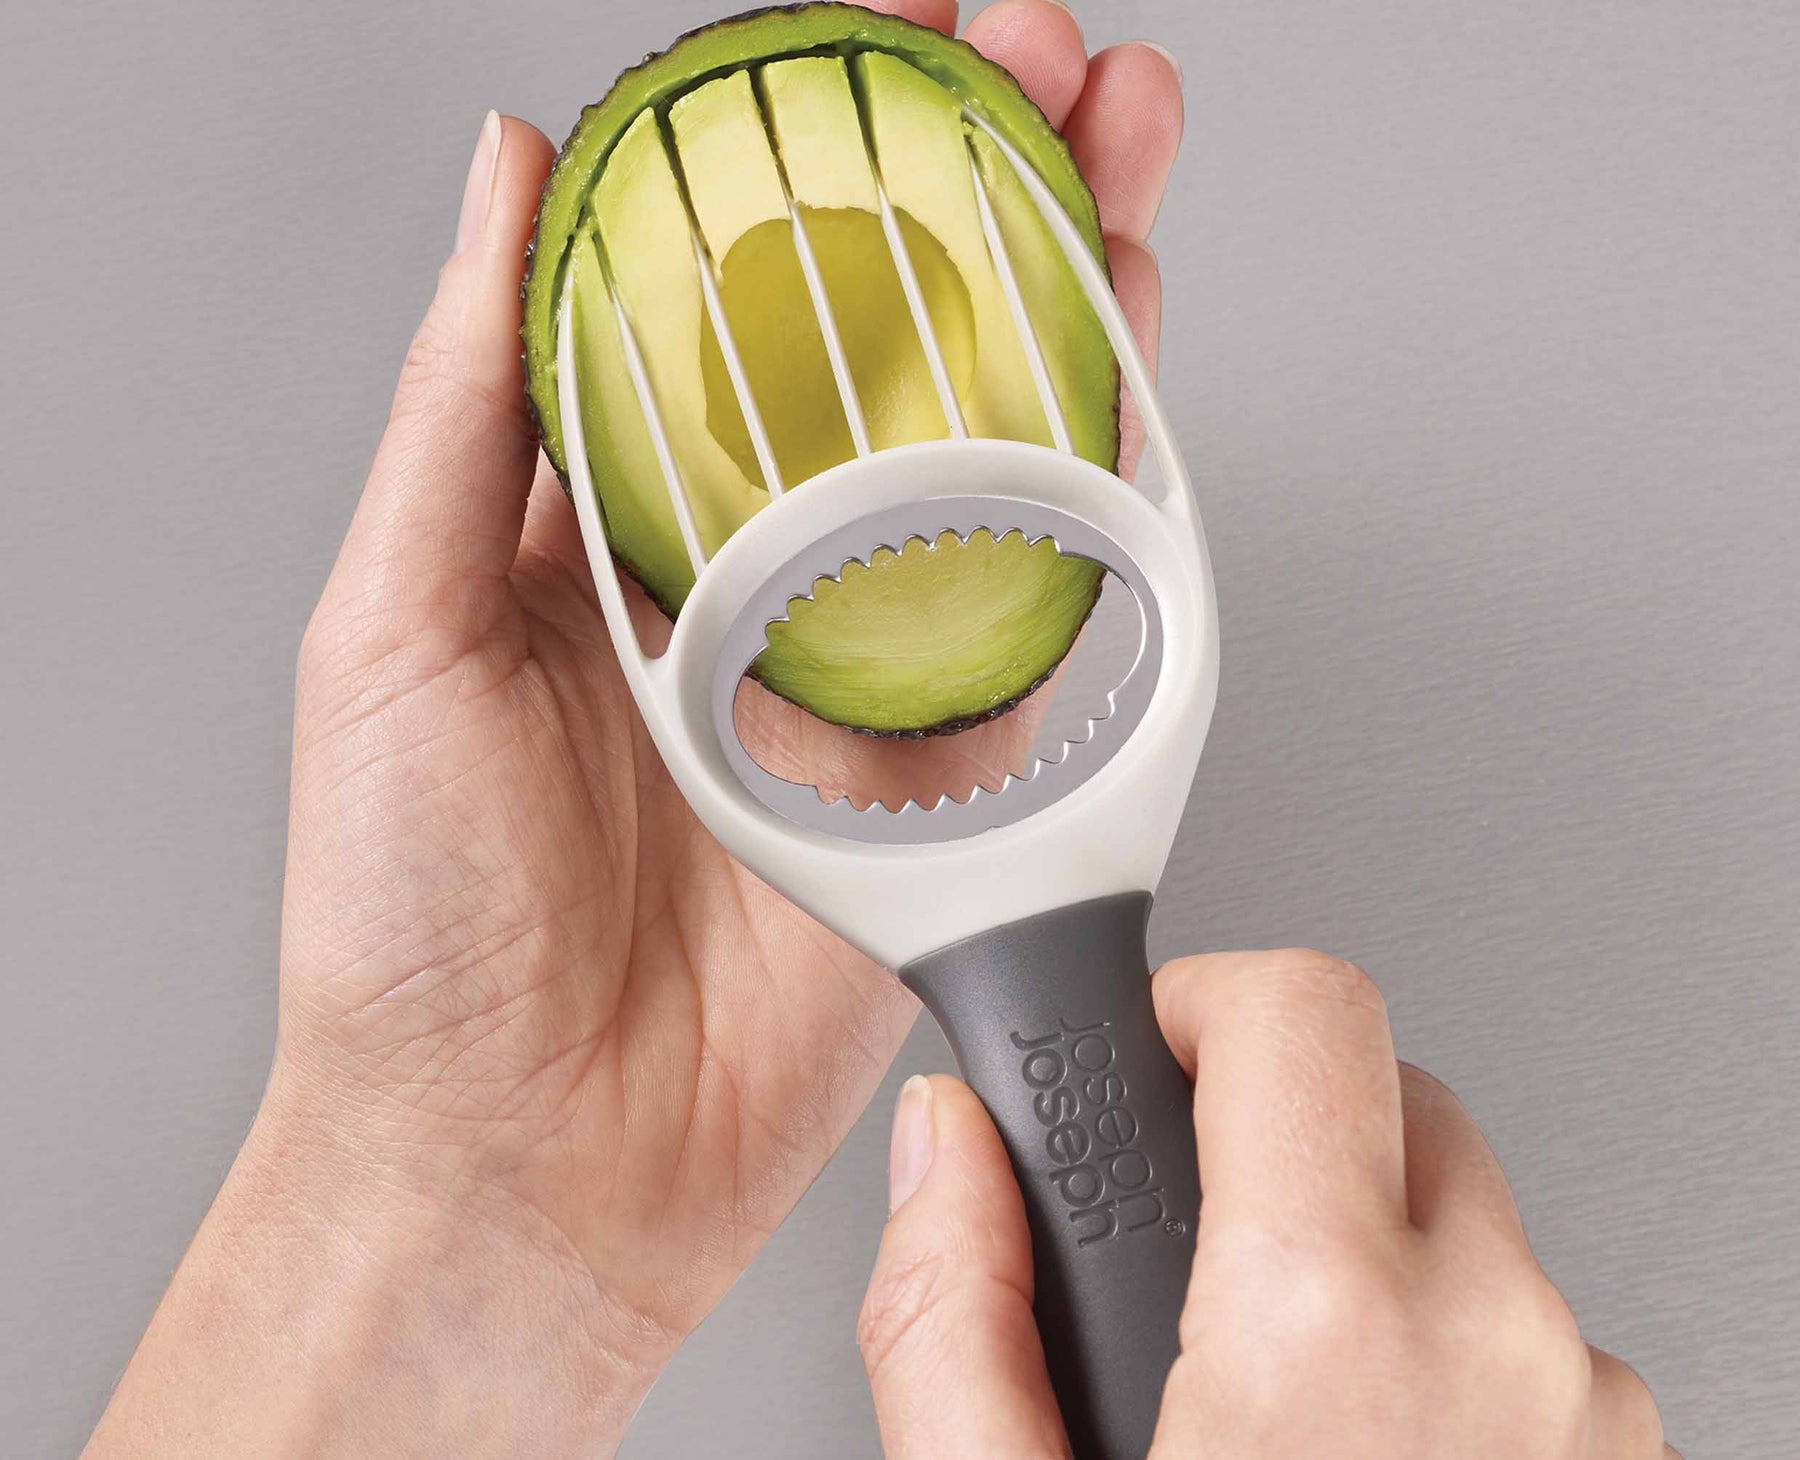 DUO 3-in-1 Avocado Tool